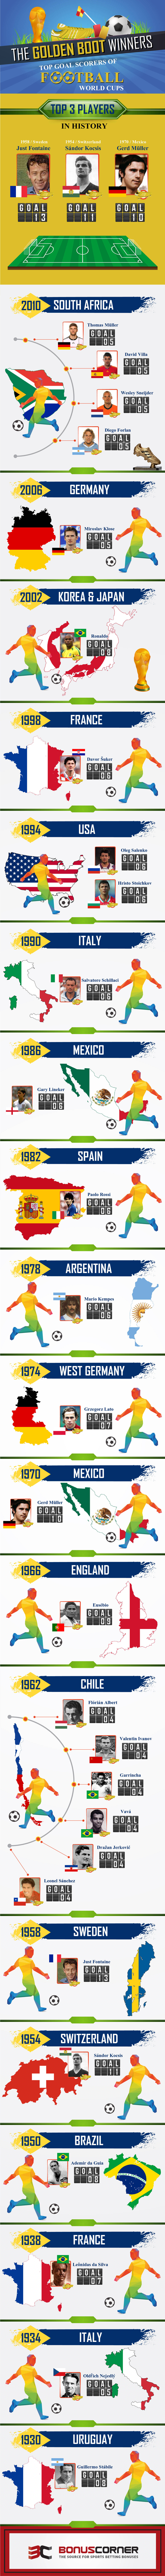 The Golden Boot Winners – Top Goal Scorers of Football World Cups